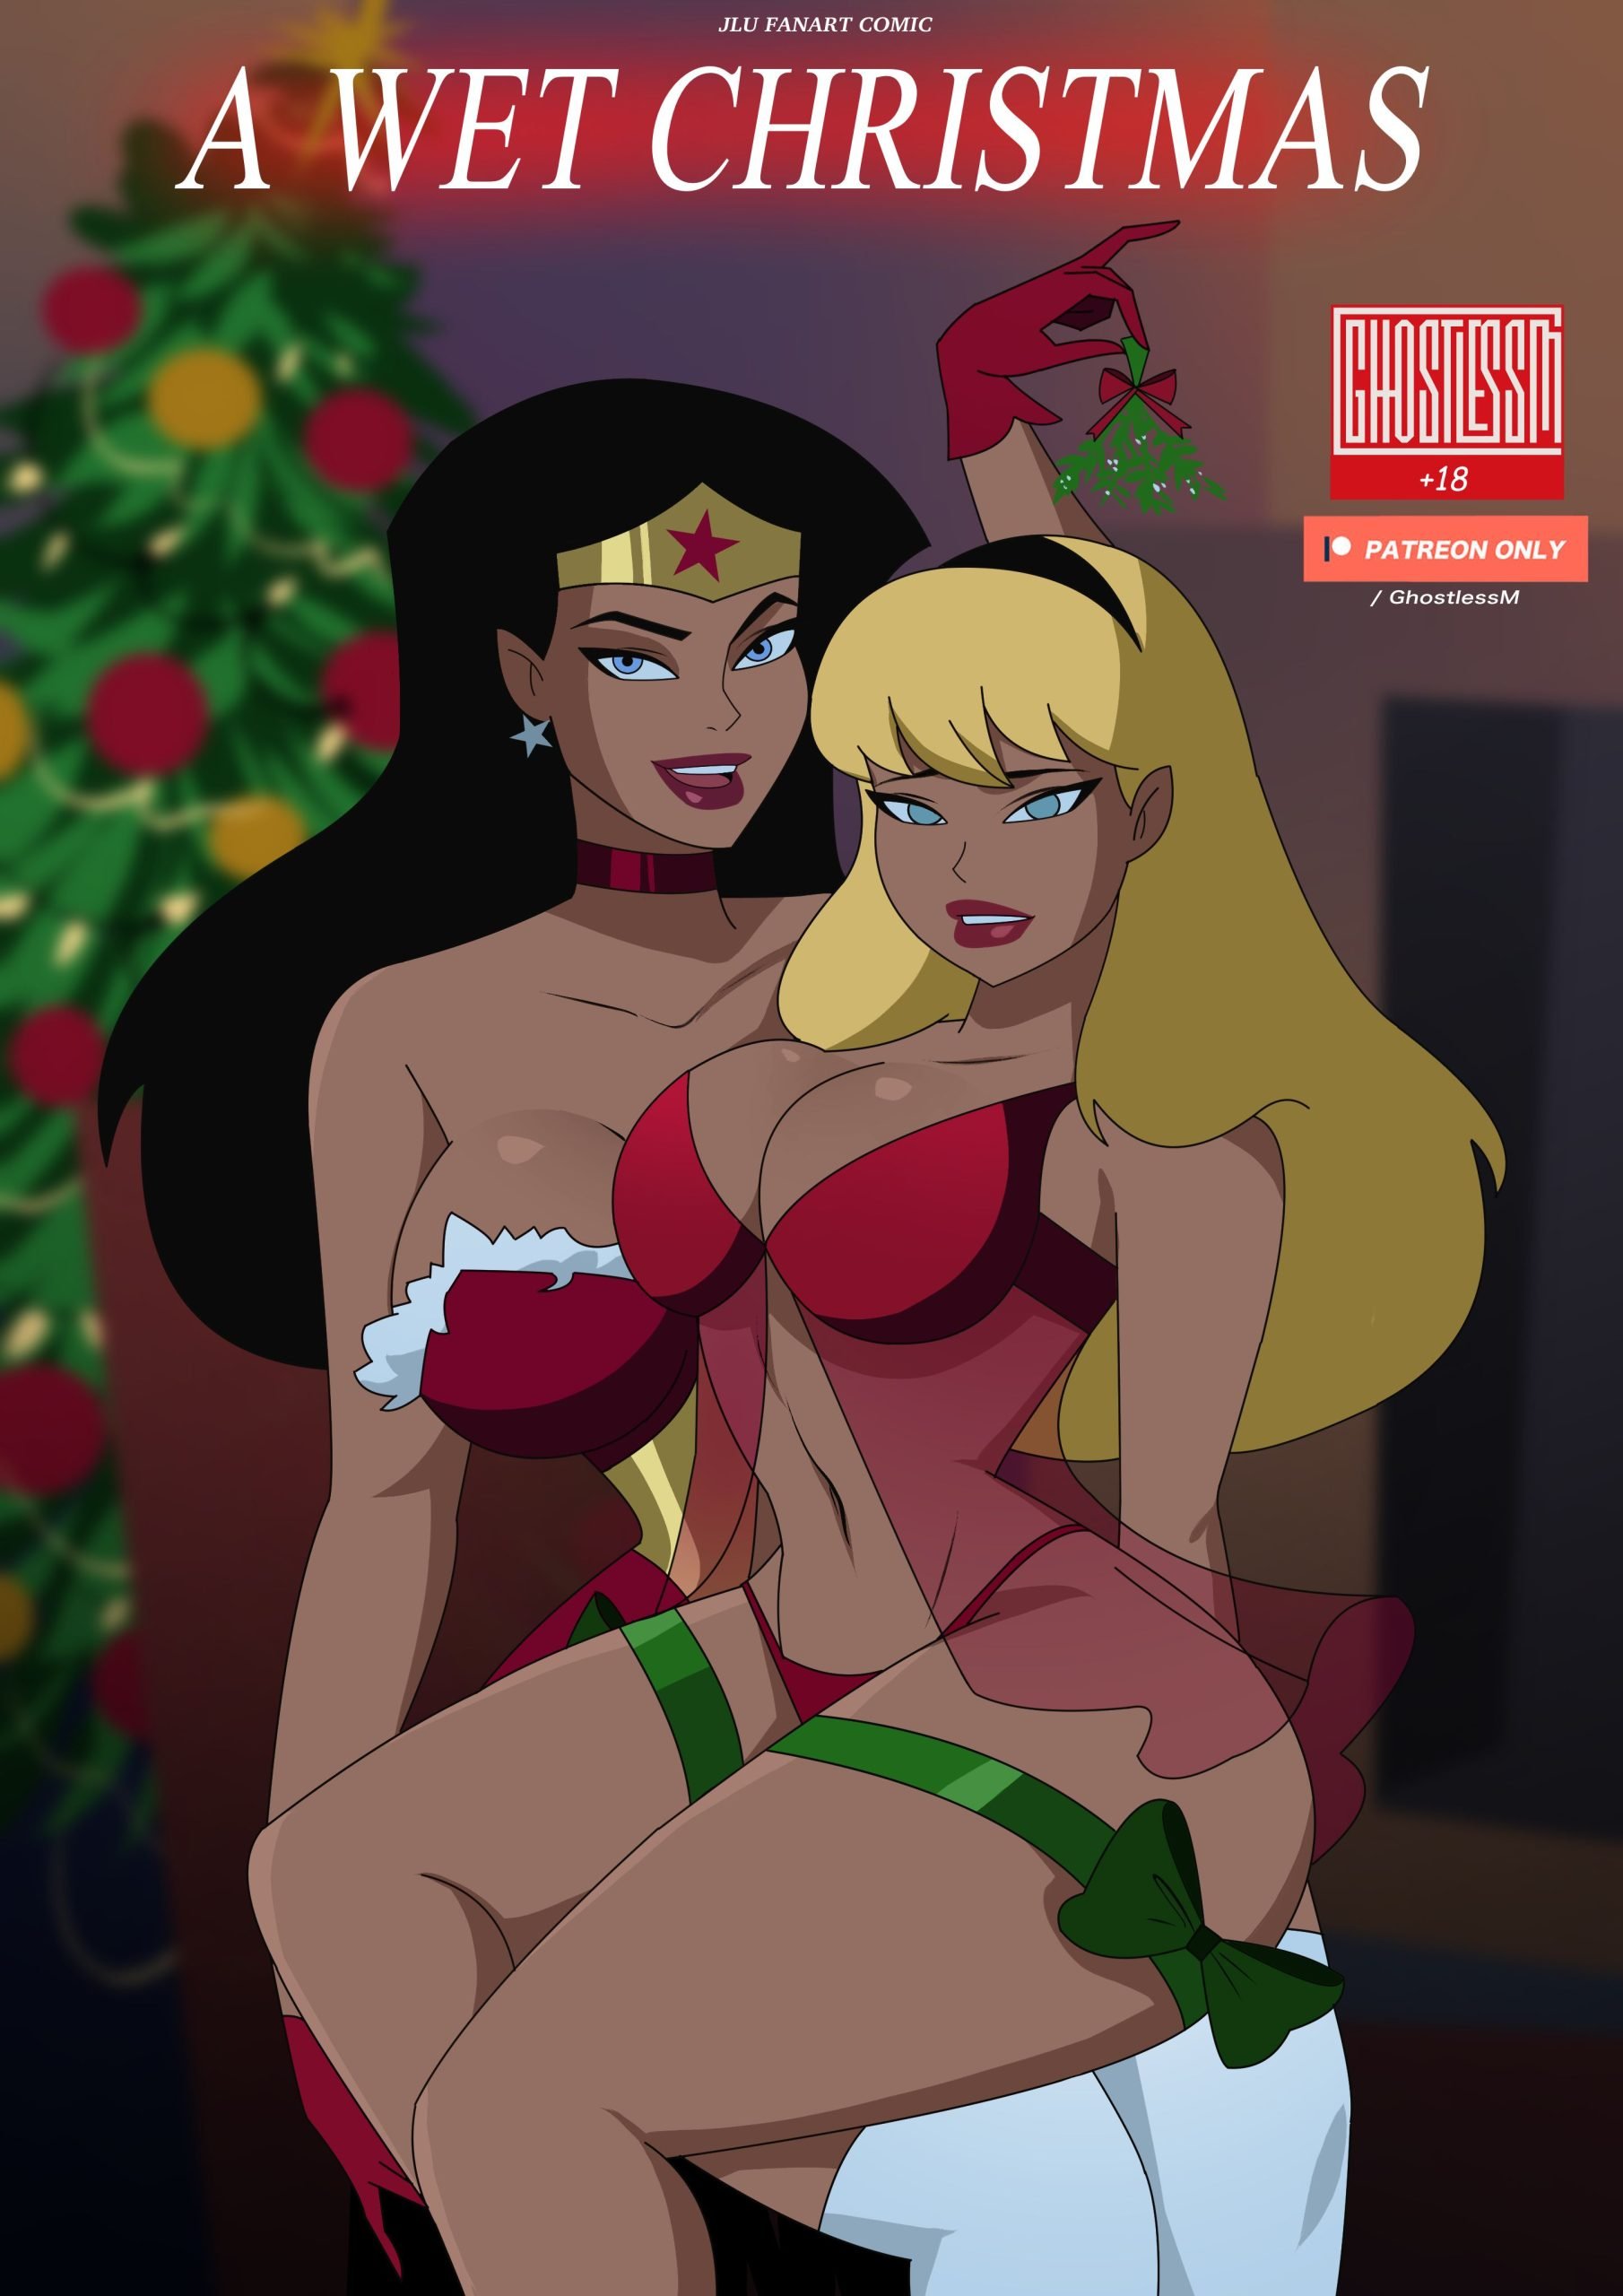 Wonder Woman Justice League Porn Vandalized - A Wet Christmas (Justice League) [GhostlessM] Porn Comic - AllPornComic